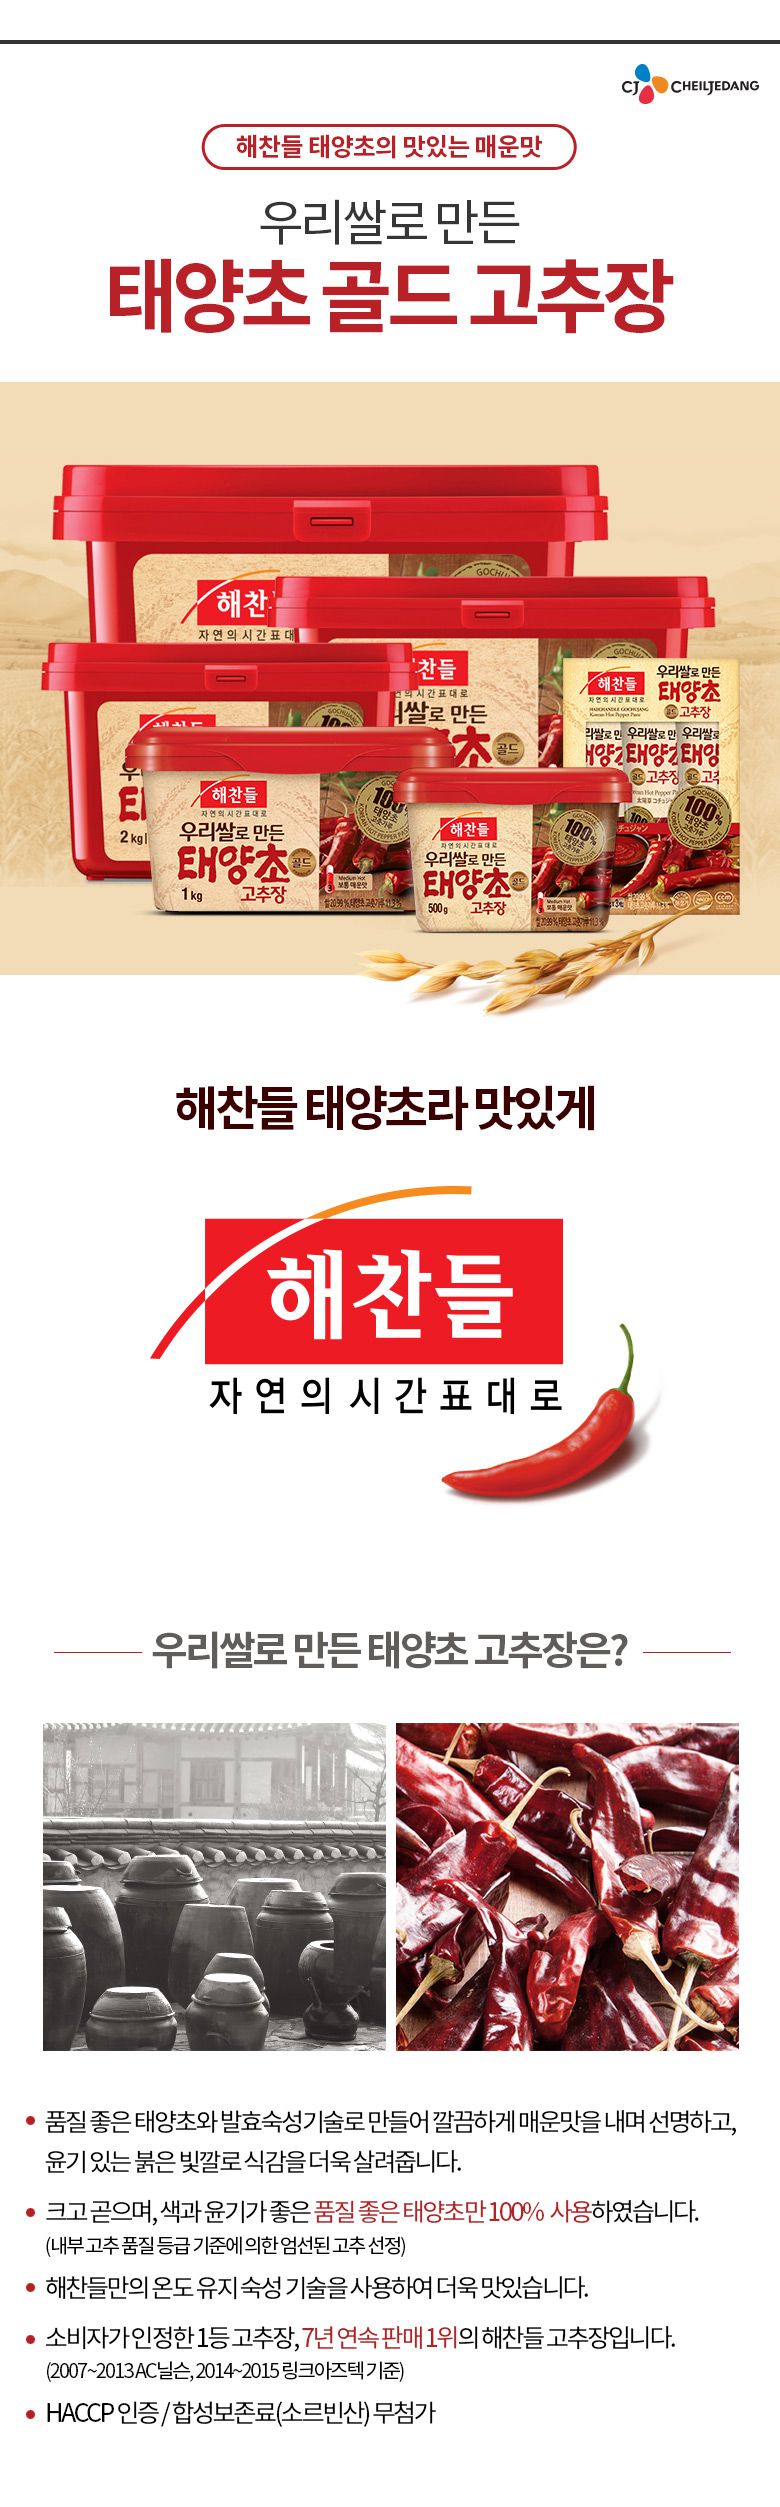 韓國食品-[CJ] 好餐得 太陽草辣椒醬 1kg